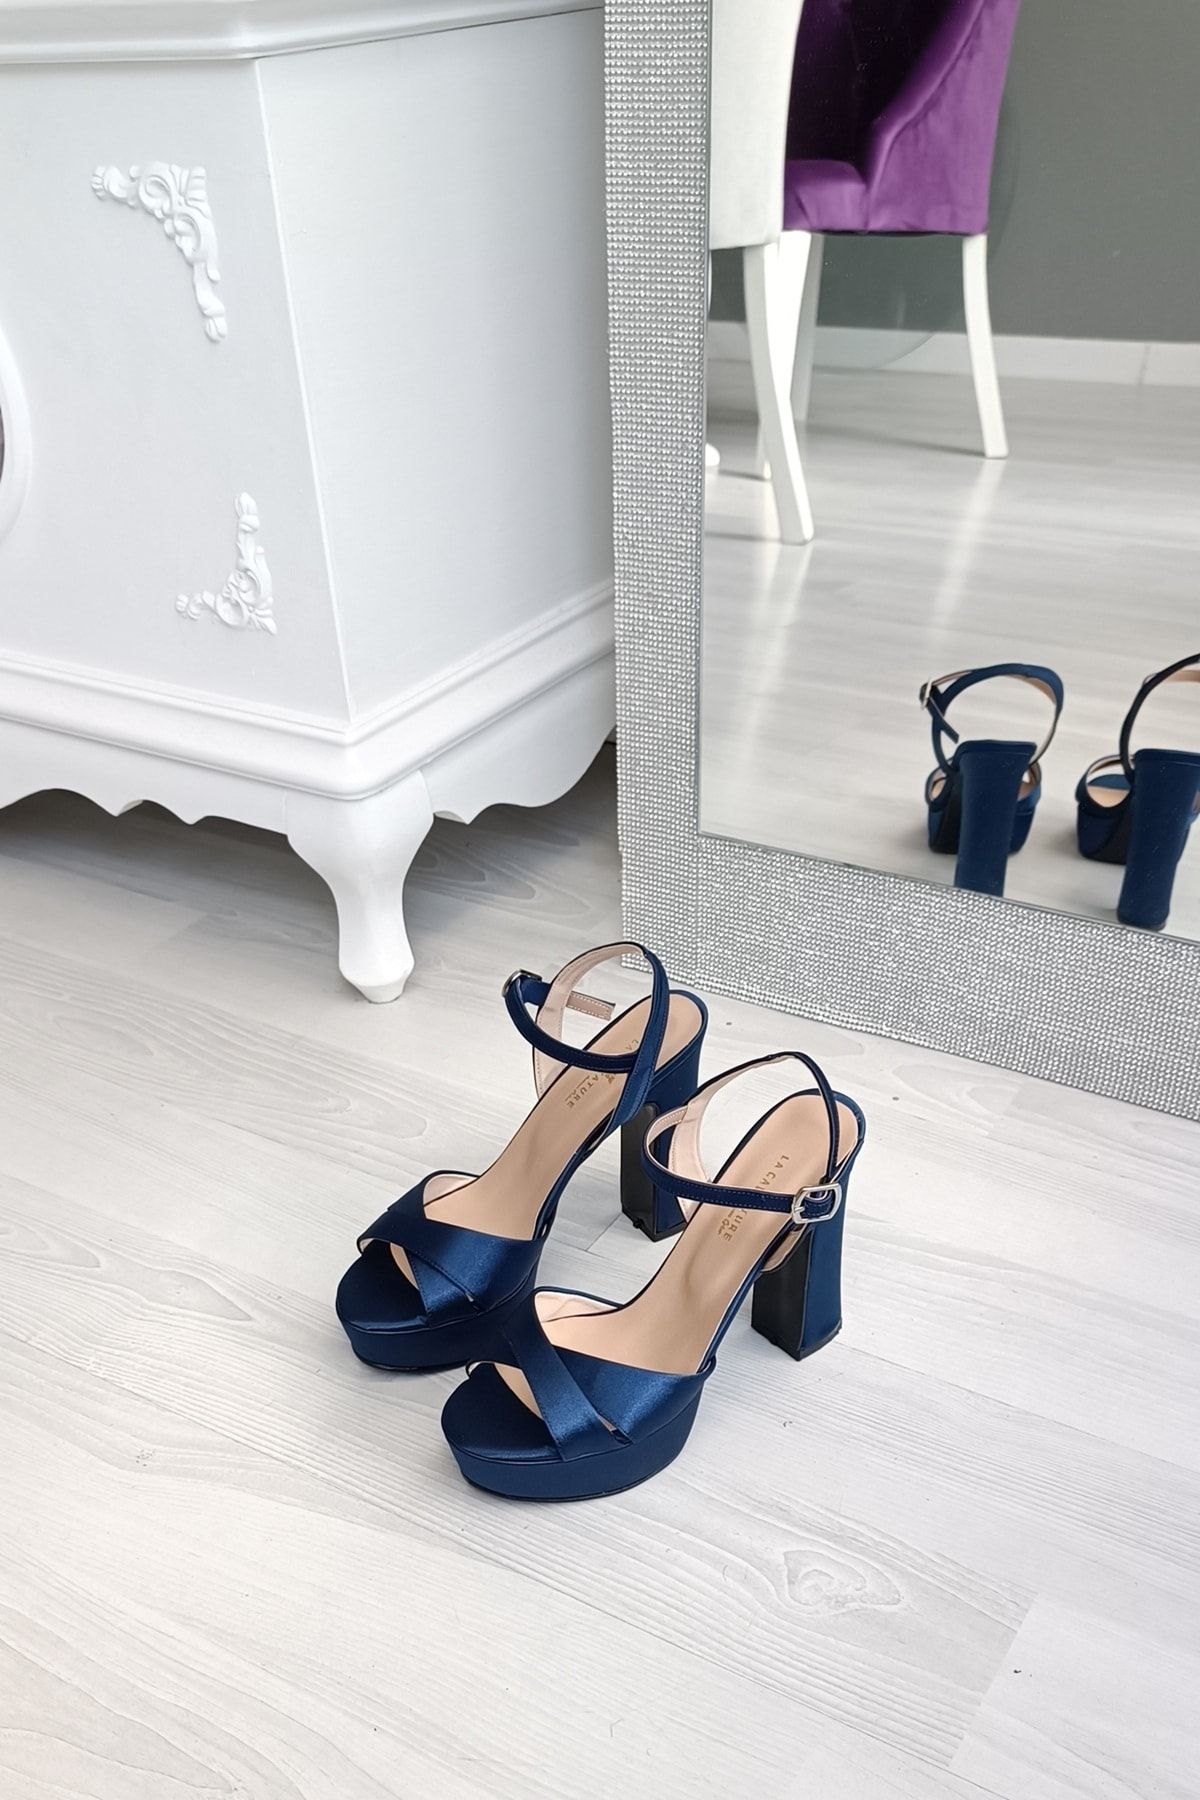 CL CALZATURE Lacivert Saten 12,5 Cm Kalın Topuklu Platformlu Çapraz Bantlı Bilek Kemerli Abiye Kadın Ayakkabı